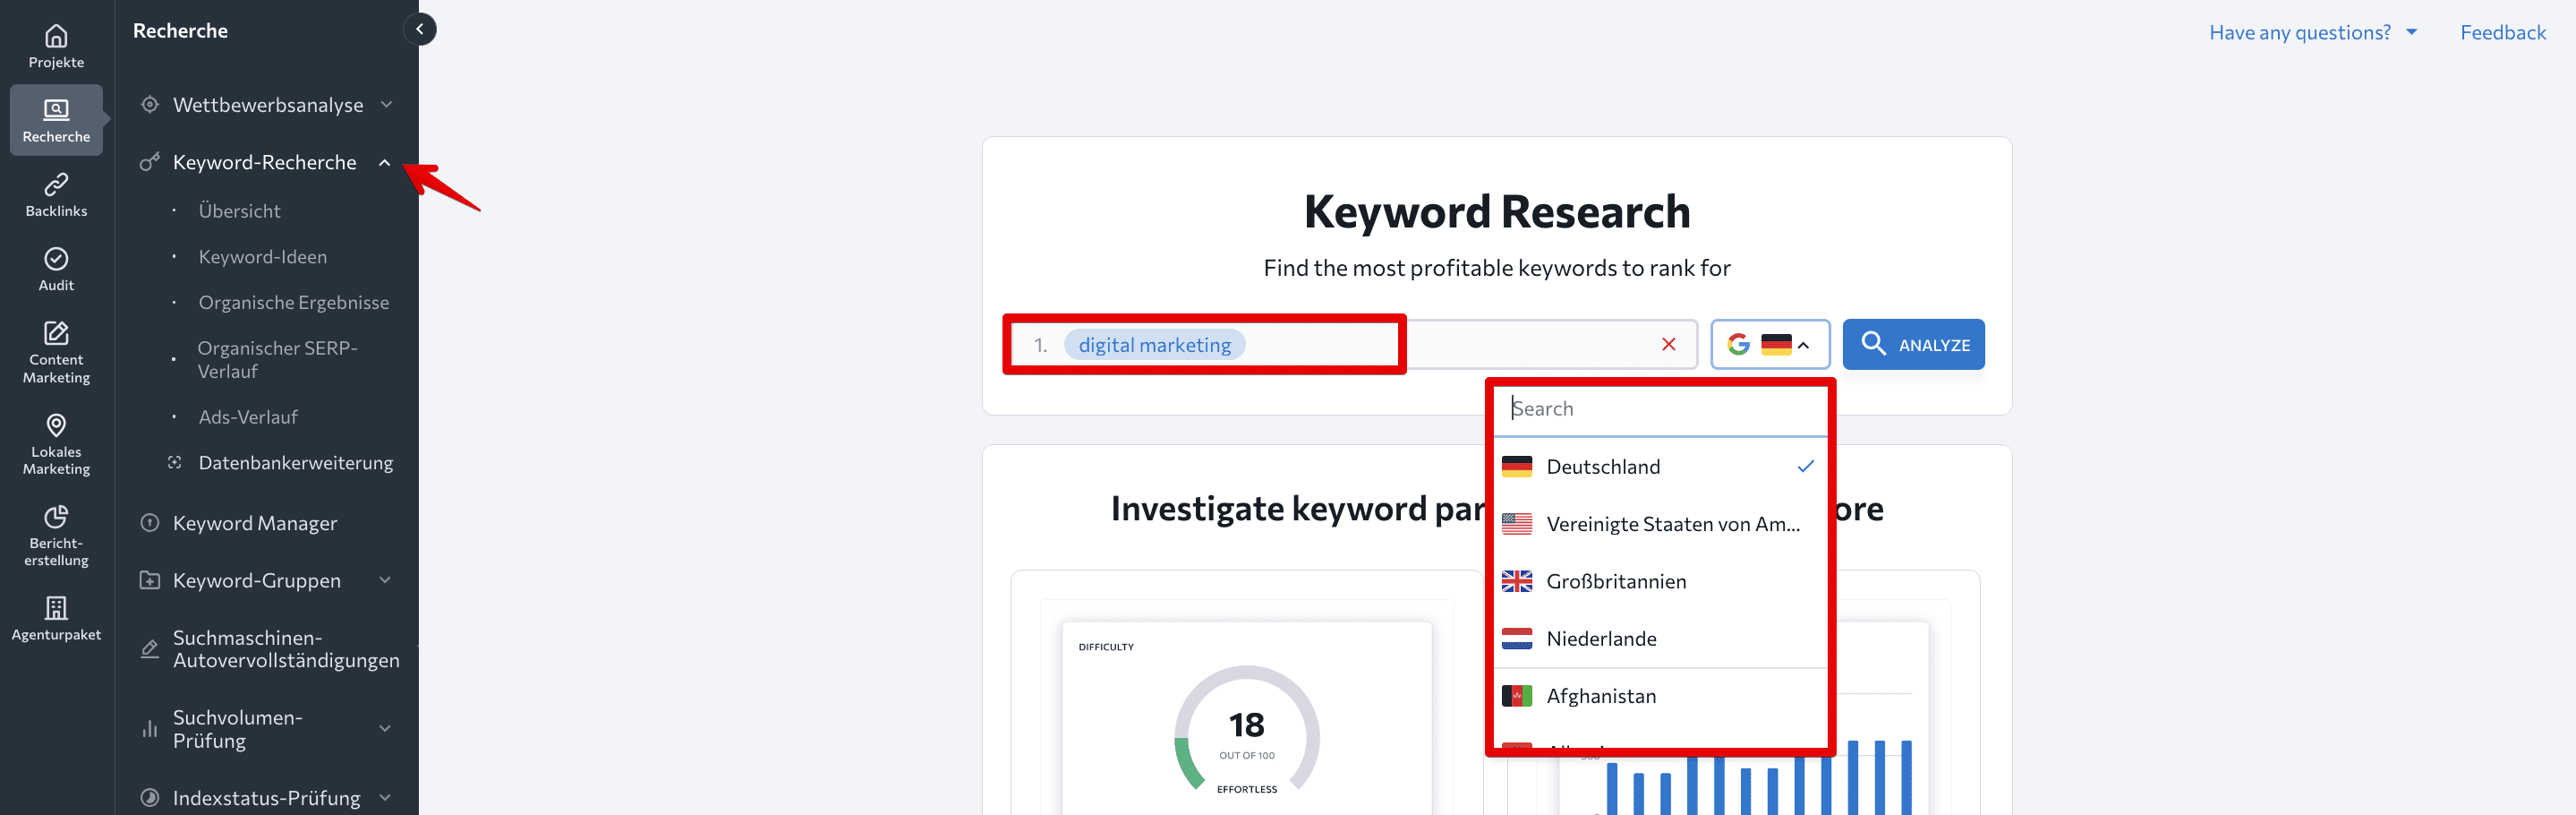 Homepage der Keyword-Recherche